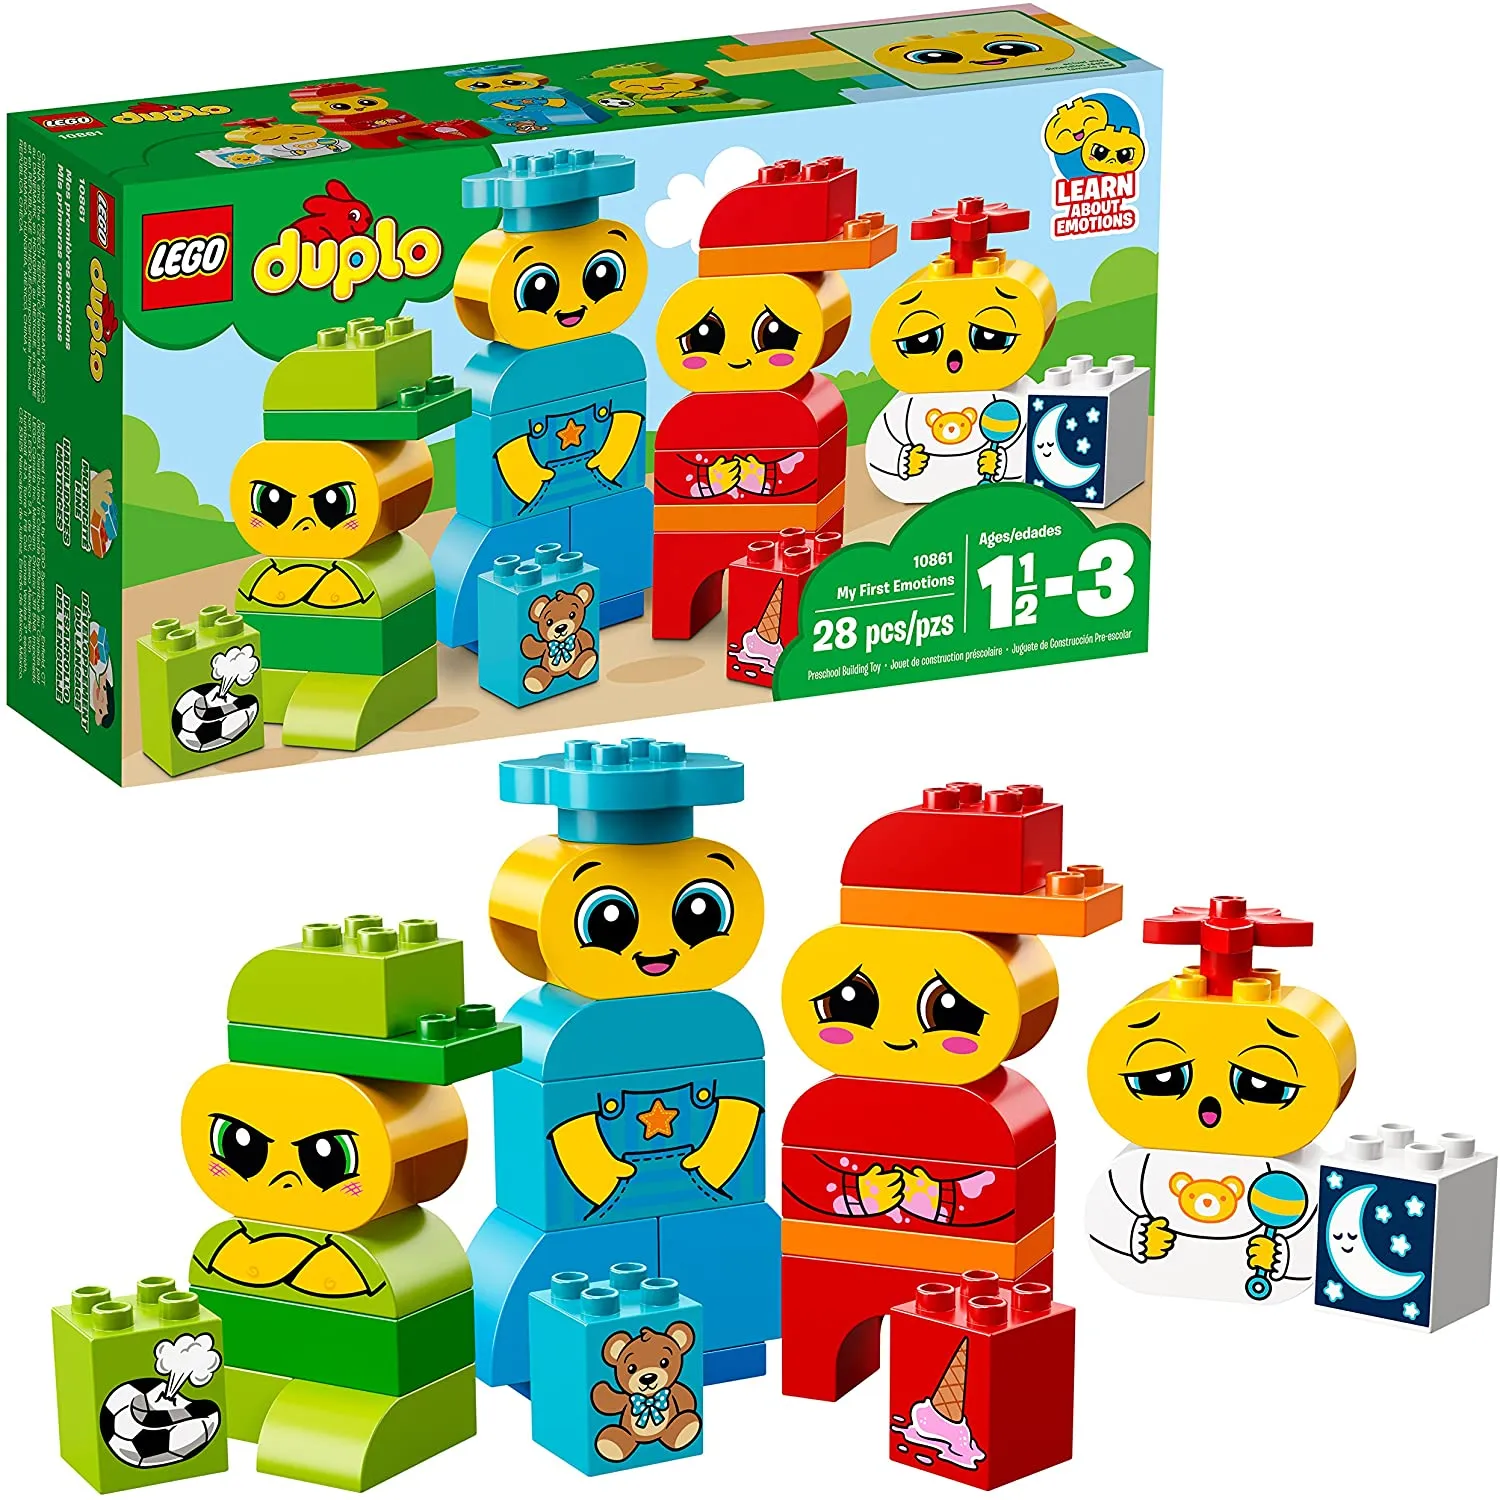 Đồ chơi LEGO DUPLO - Bộ Cảm Xúc Đầu Tiên Của Bé - Mã SP 10861